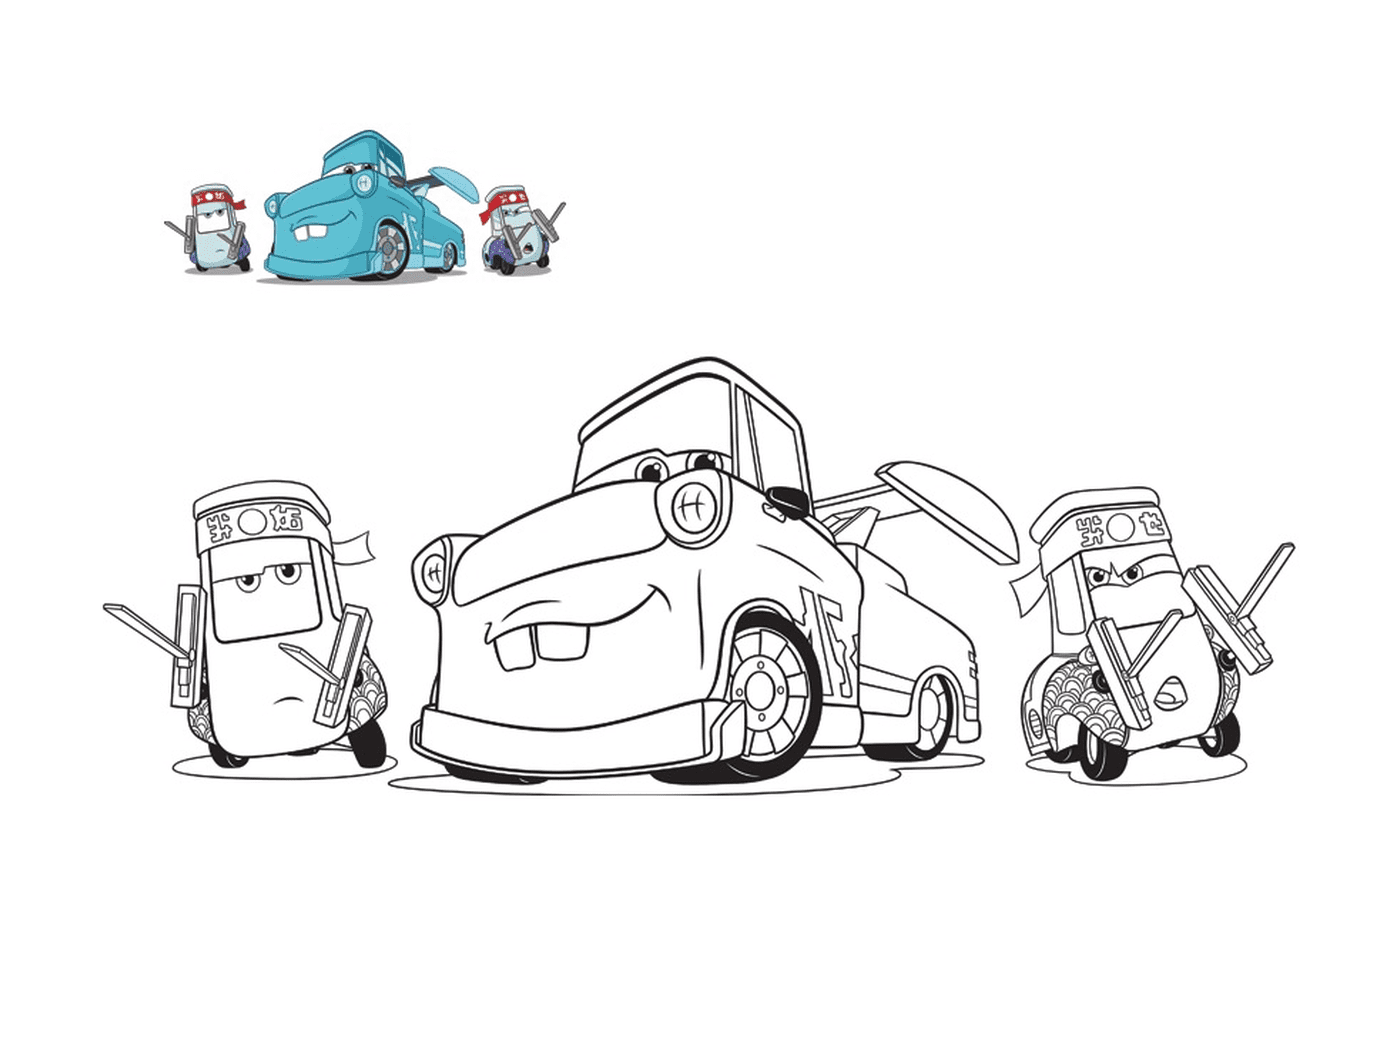  Coches 3, Guido y sus amigos, grúa mecánica, línea de un coche con un coche en el suelo 